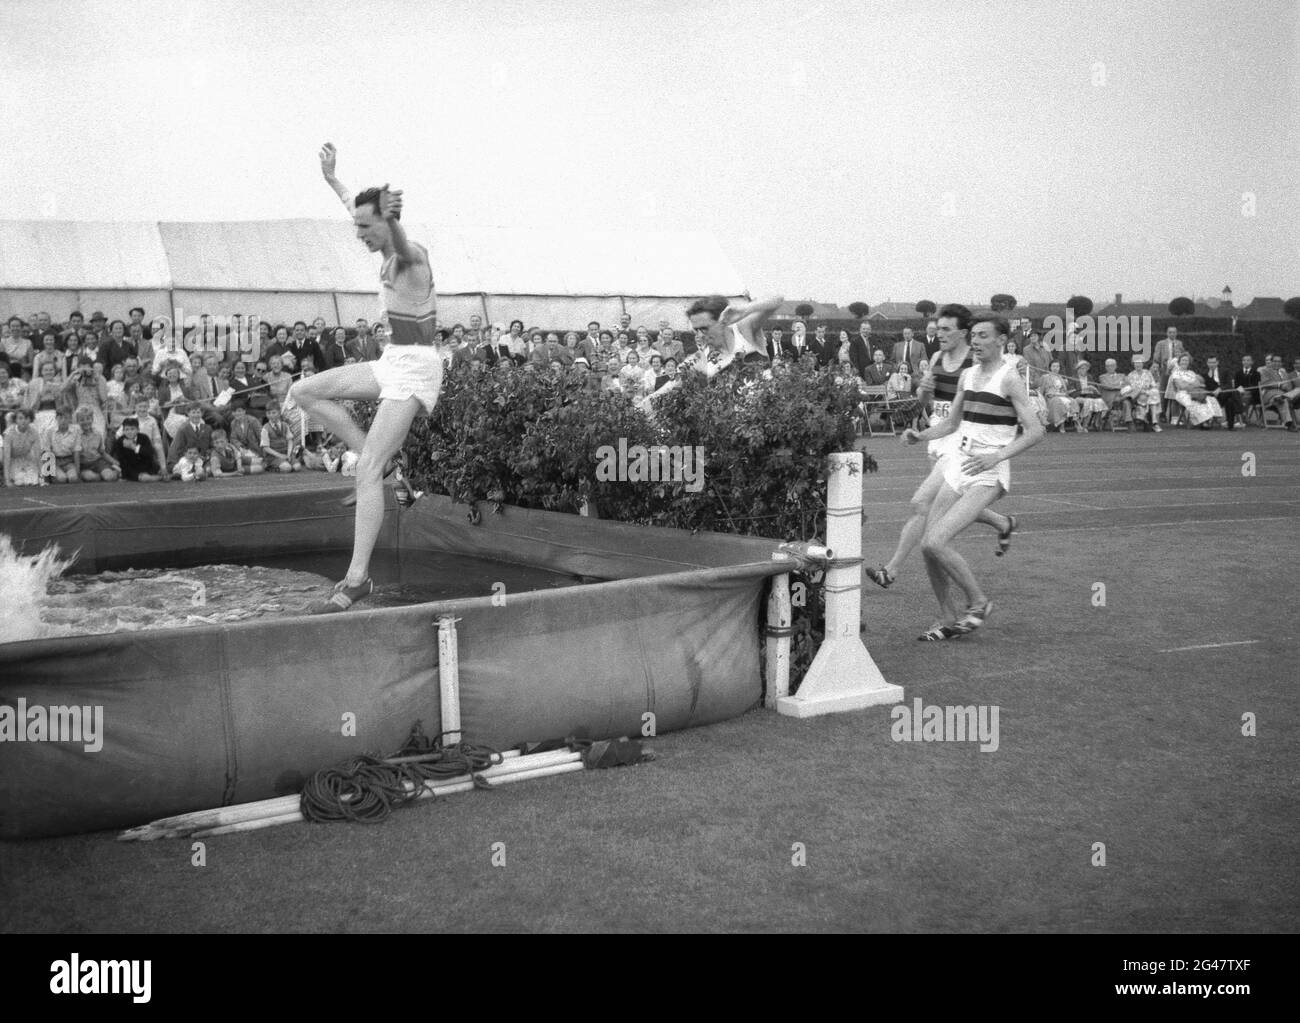 1954, historique, à l'extérieur sur une piste d'herbe, les hommes concurrents s'attaquant à un saut d'eau dans la steeplechase de hommes lors d'une journée de sports de la fonction publique, Angleterre, Royaume-Uni. Banque D'Images